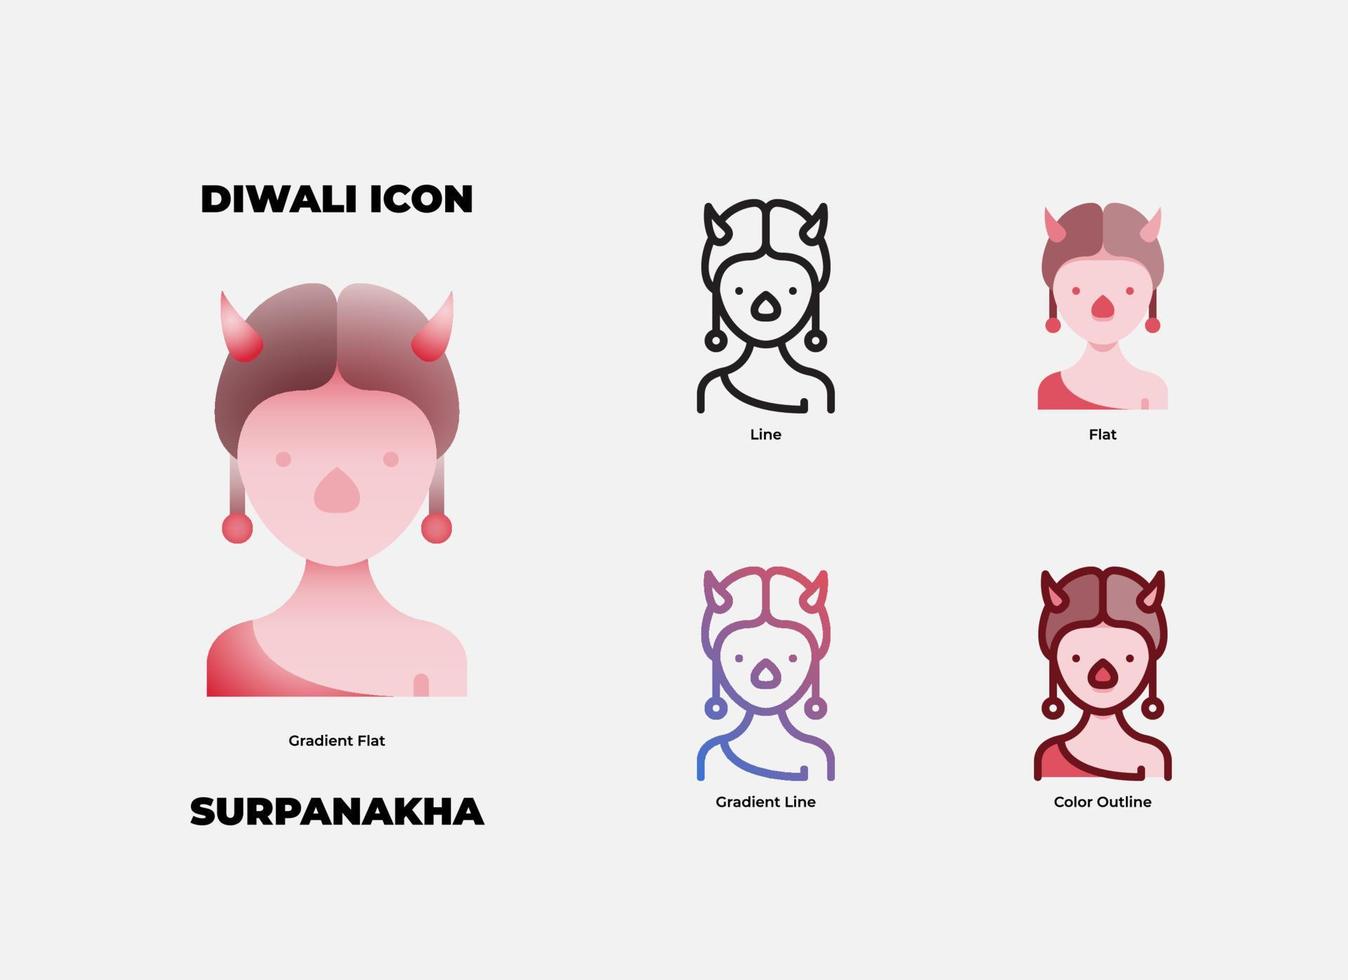 diwali surpanakha ikonuppsättning. surpanakha är en av ond karaktär i diwali-berättelsen vektor